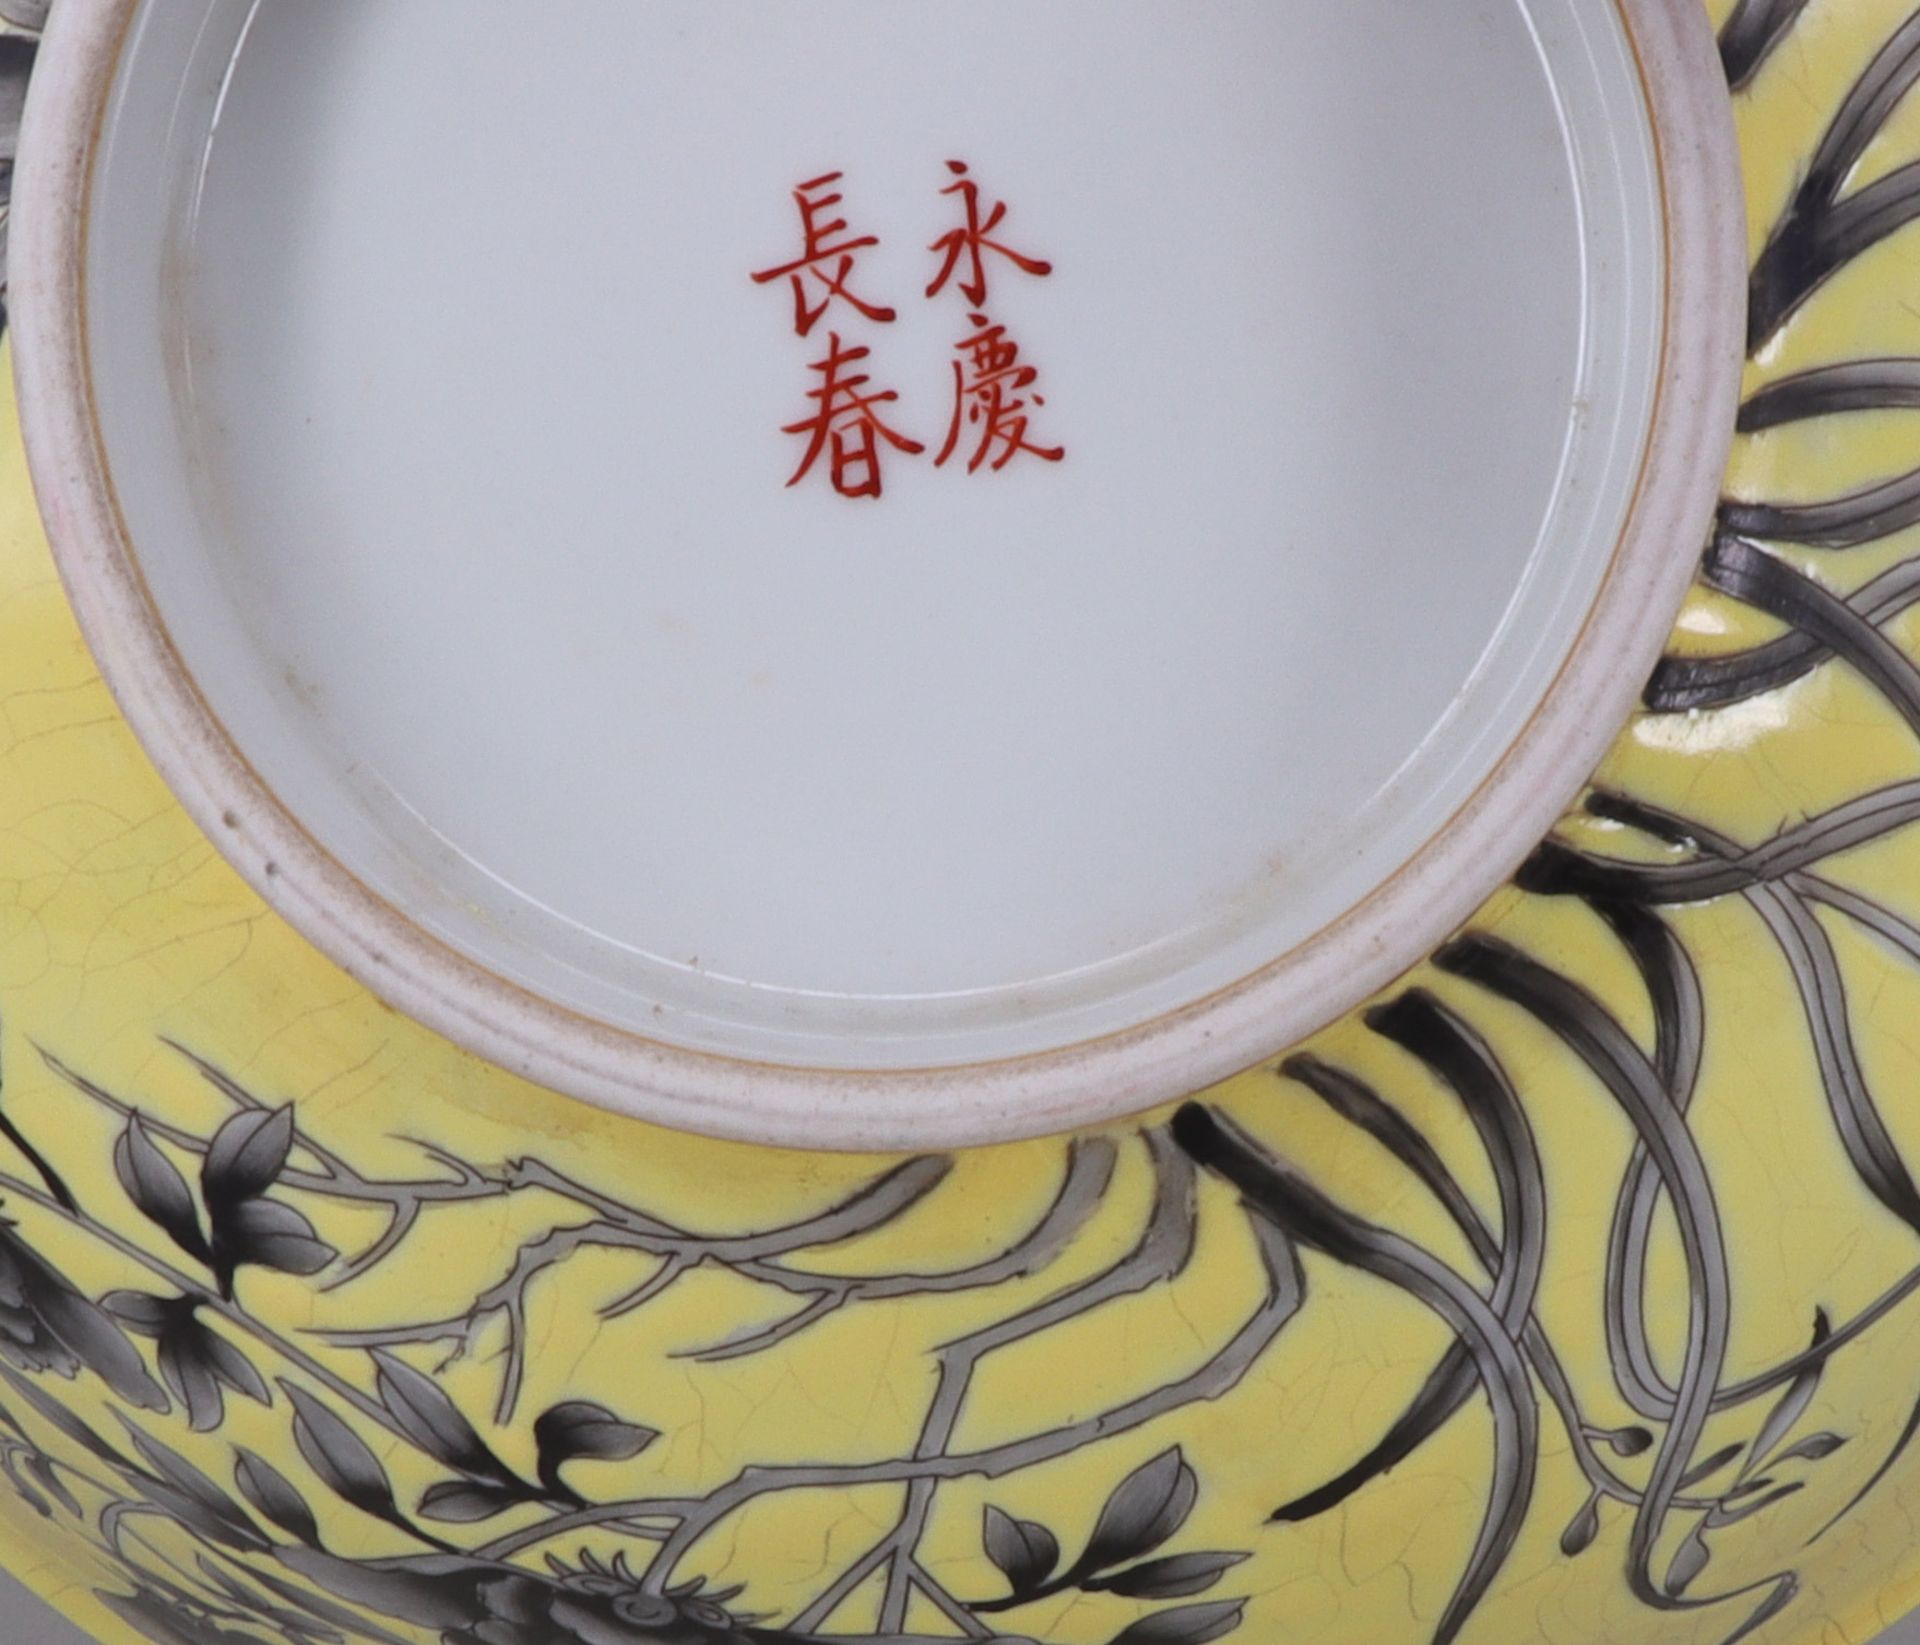 China, 19./20. Jh., große Schale, Porzellan, gelber Grund mit Blumen in Grisaille, gemarkt an der - Image 3 of 6